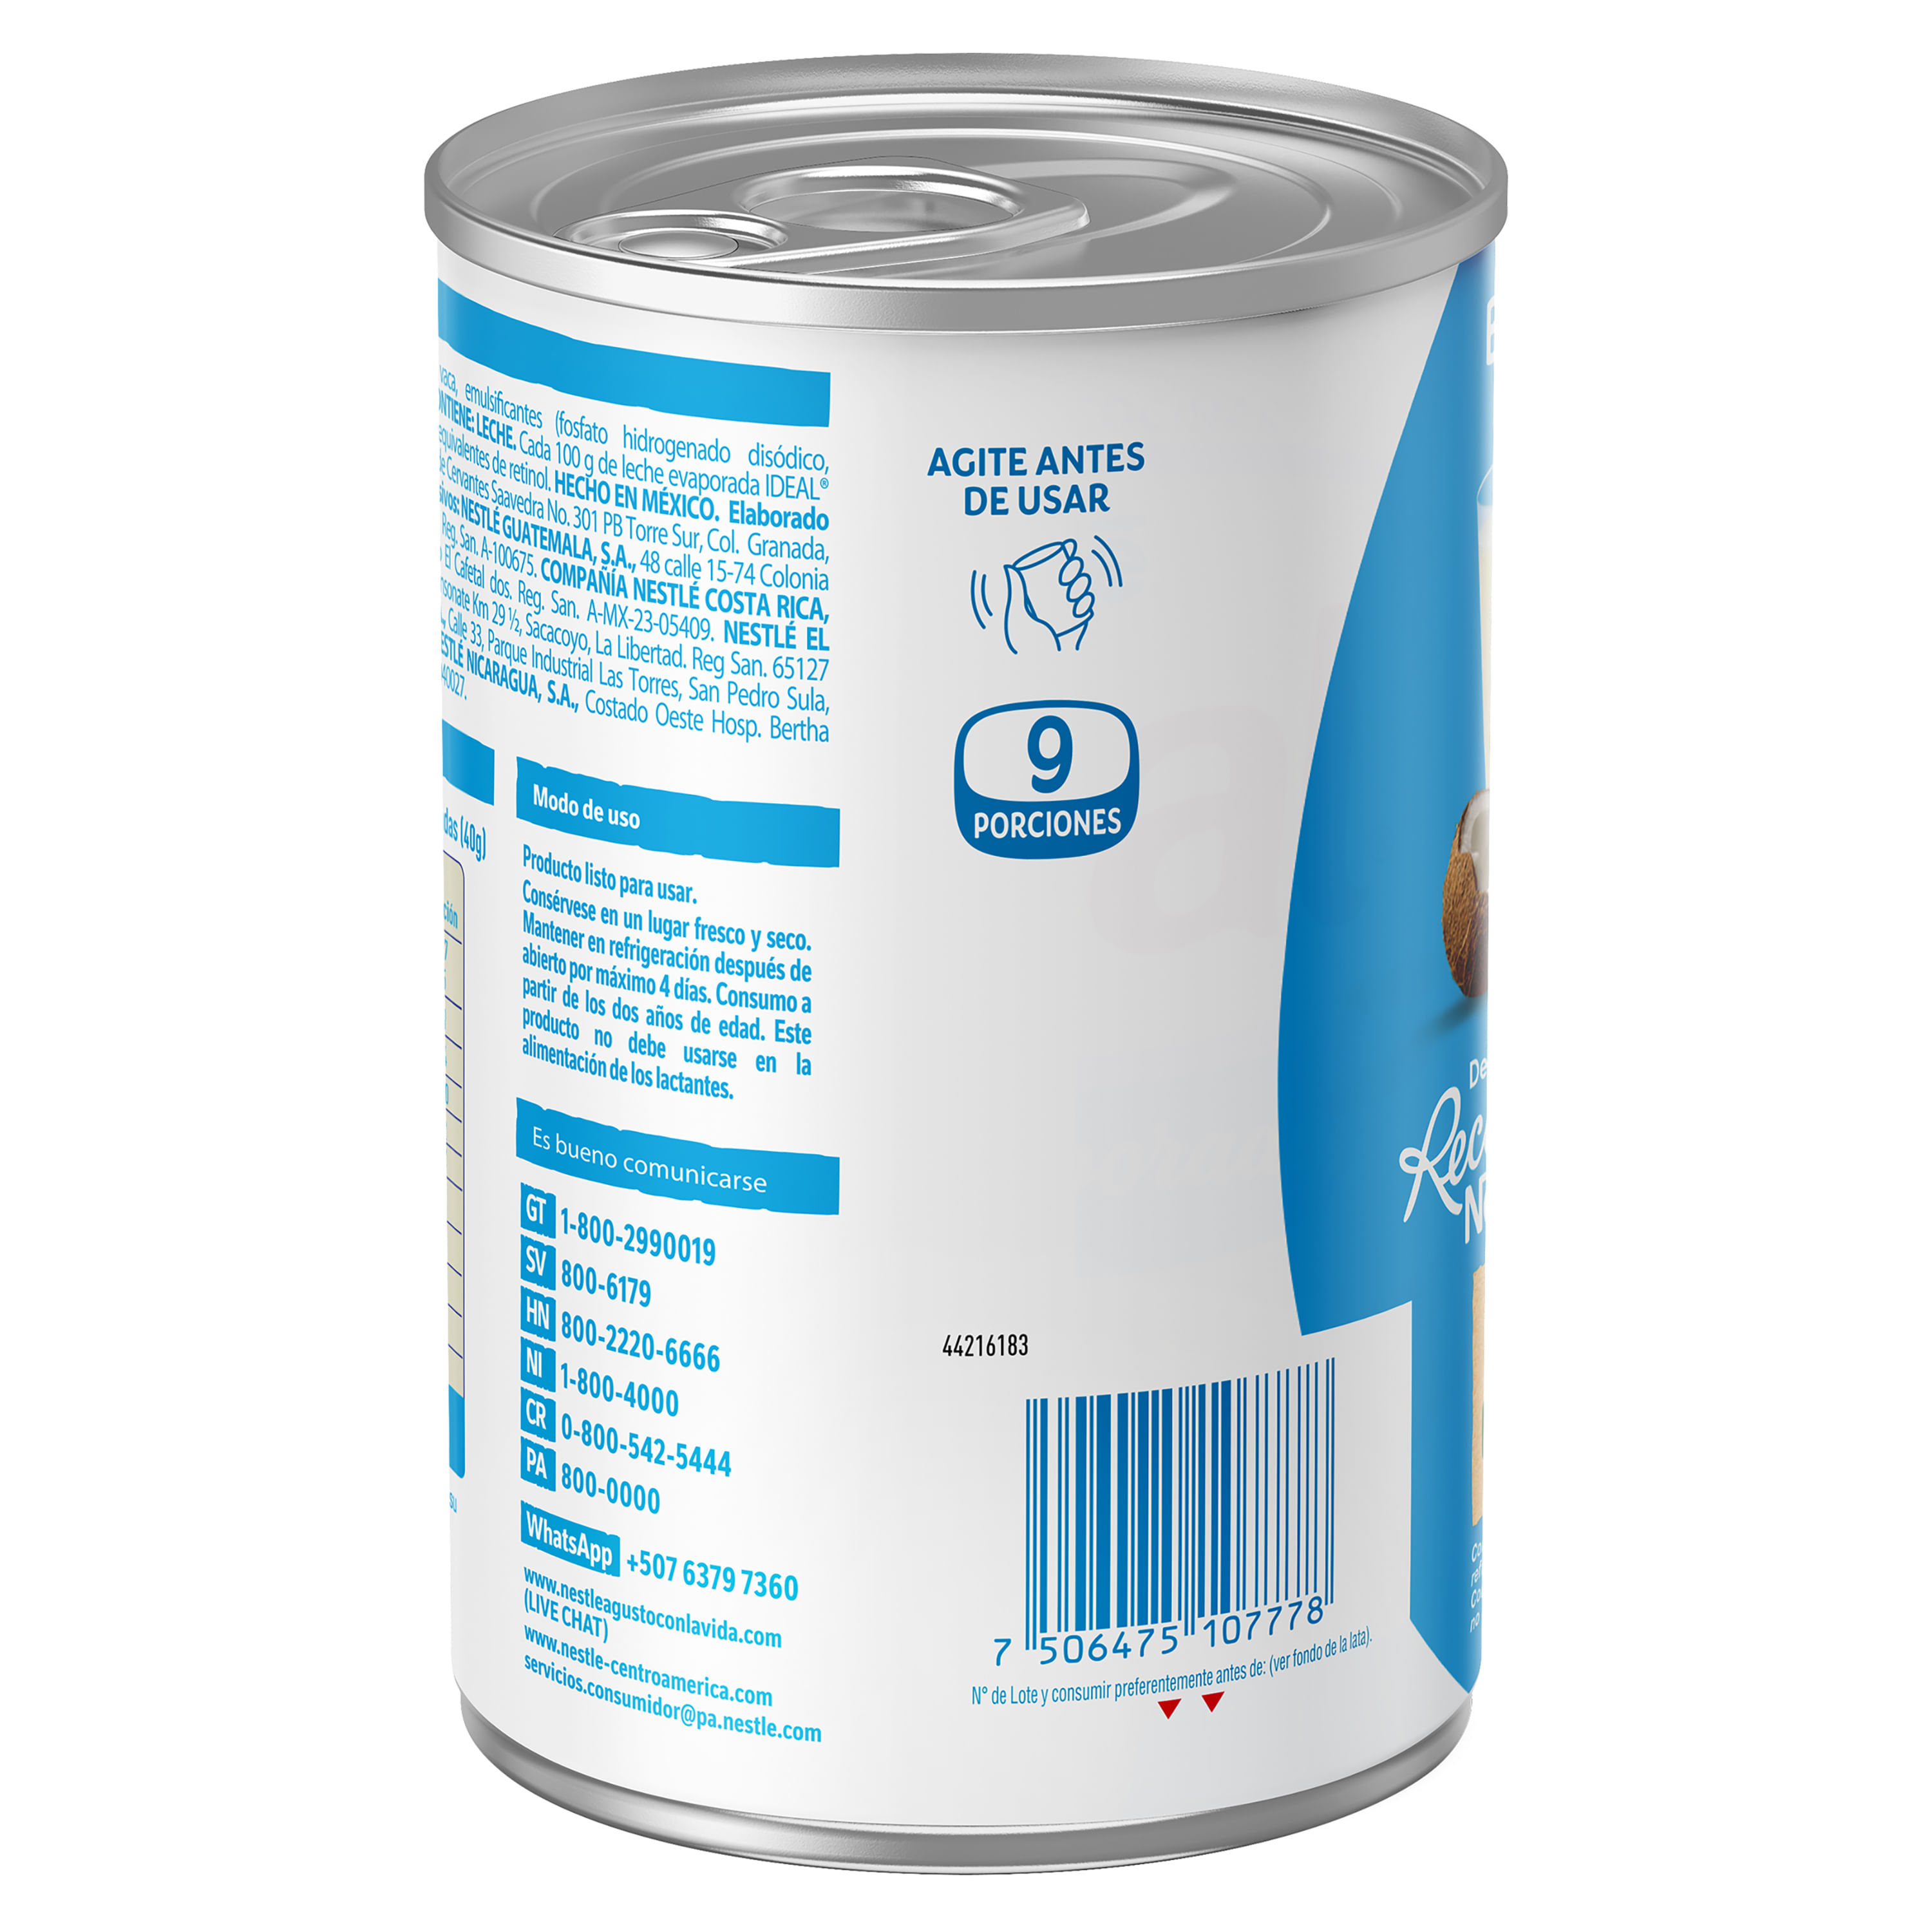 Comprar Leche Ideal Evaporada Nestlé, lata - 360g